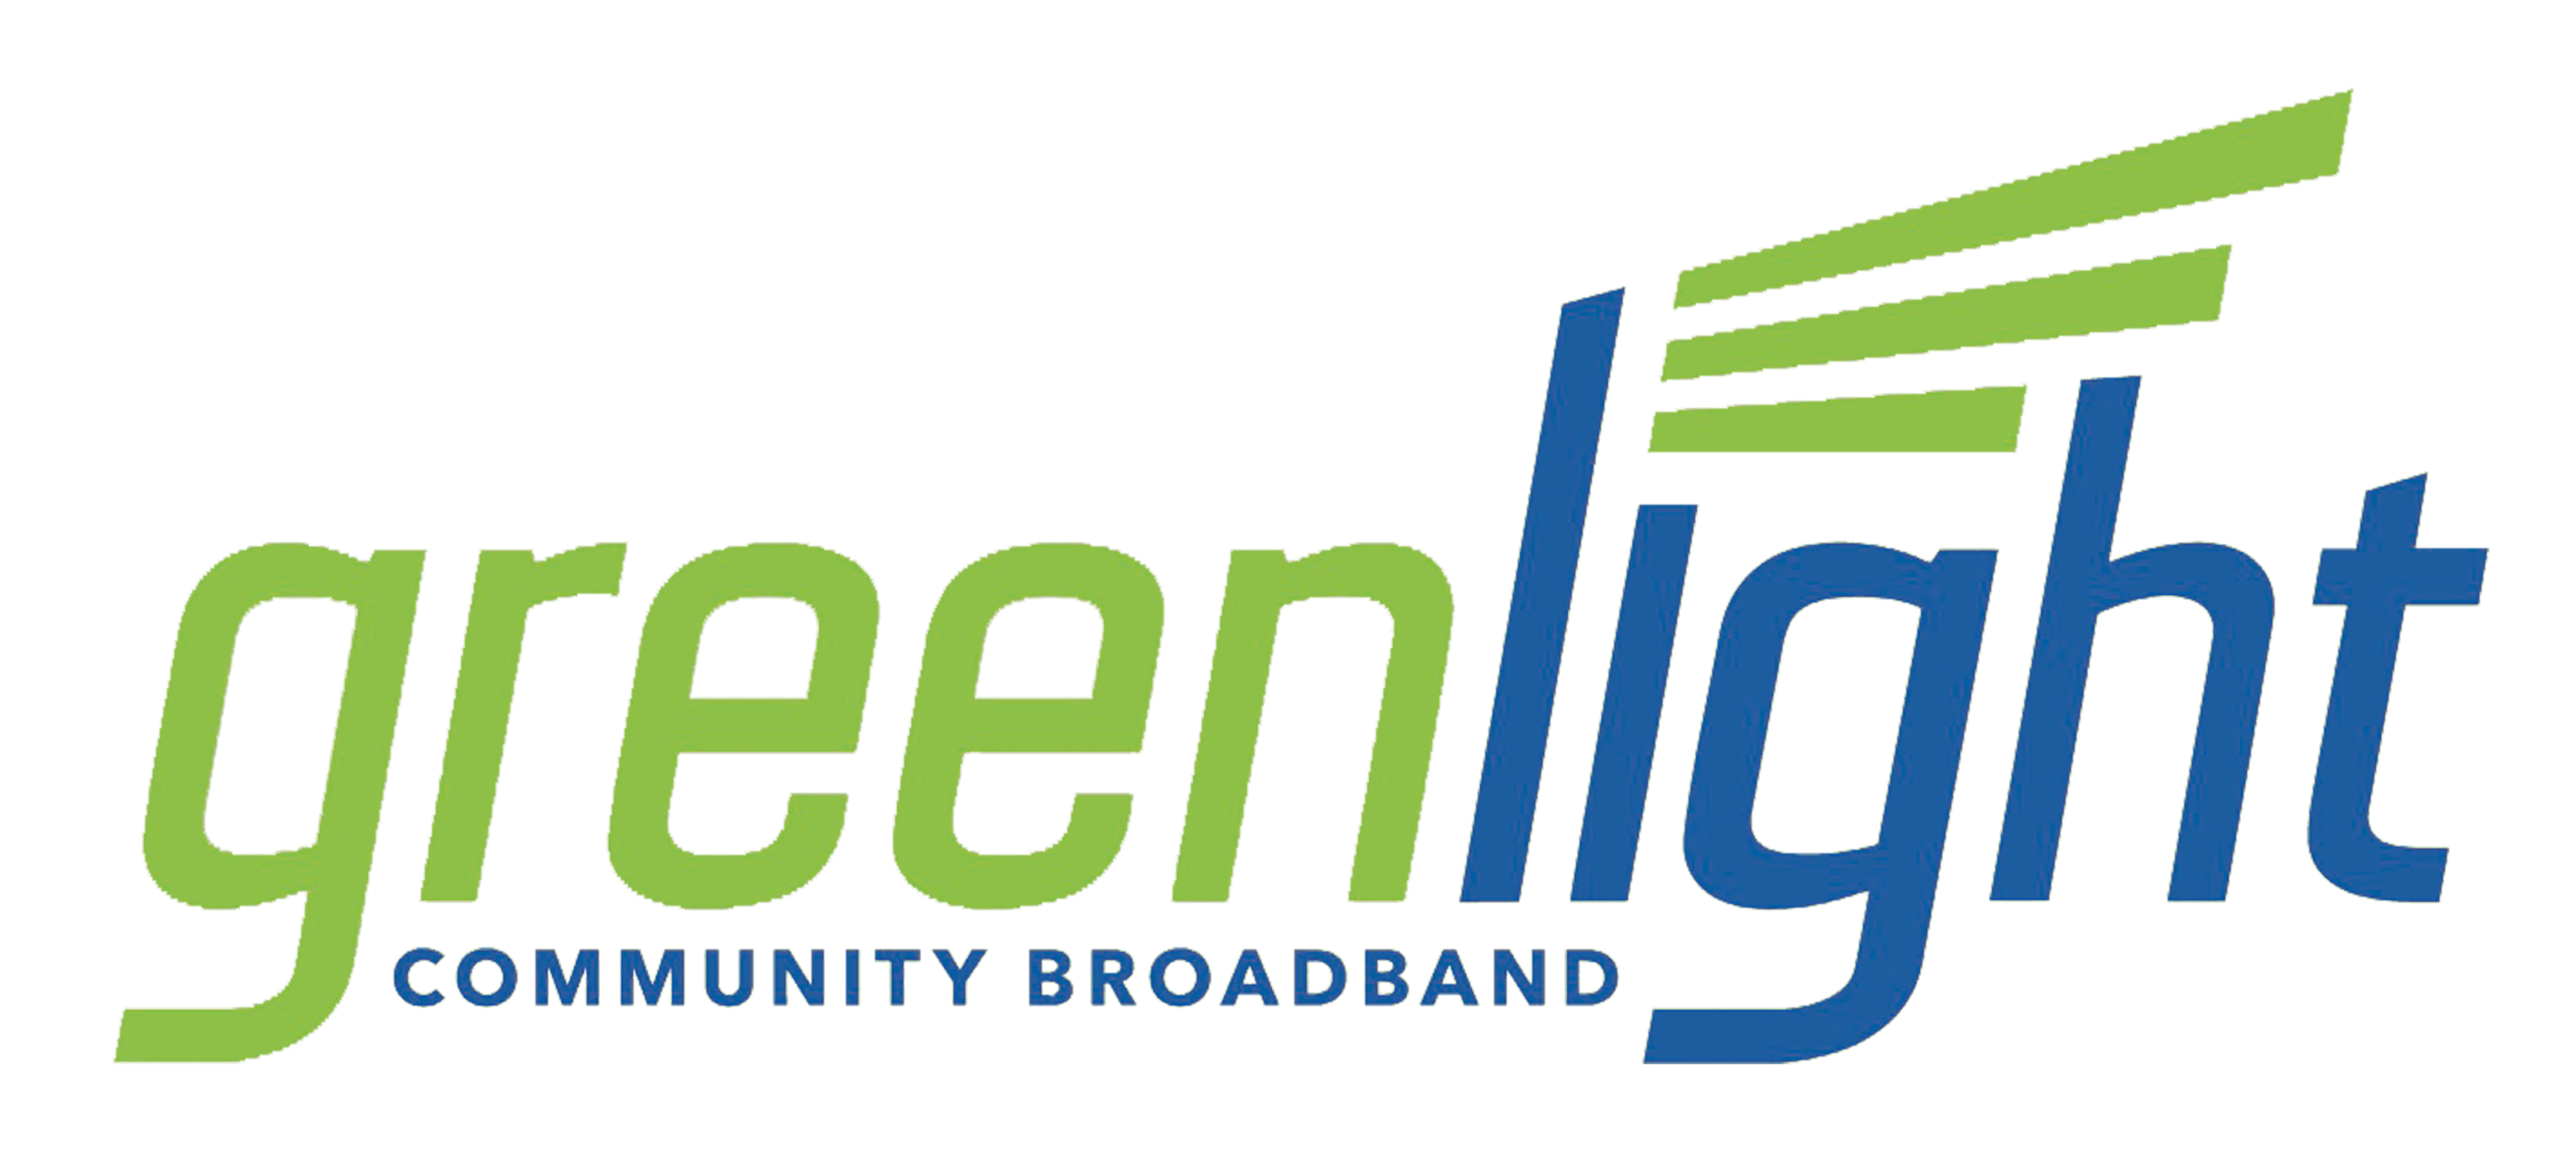 greenlight logo png